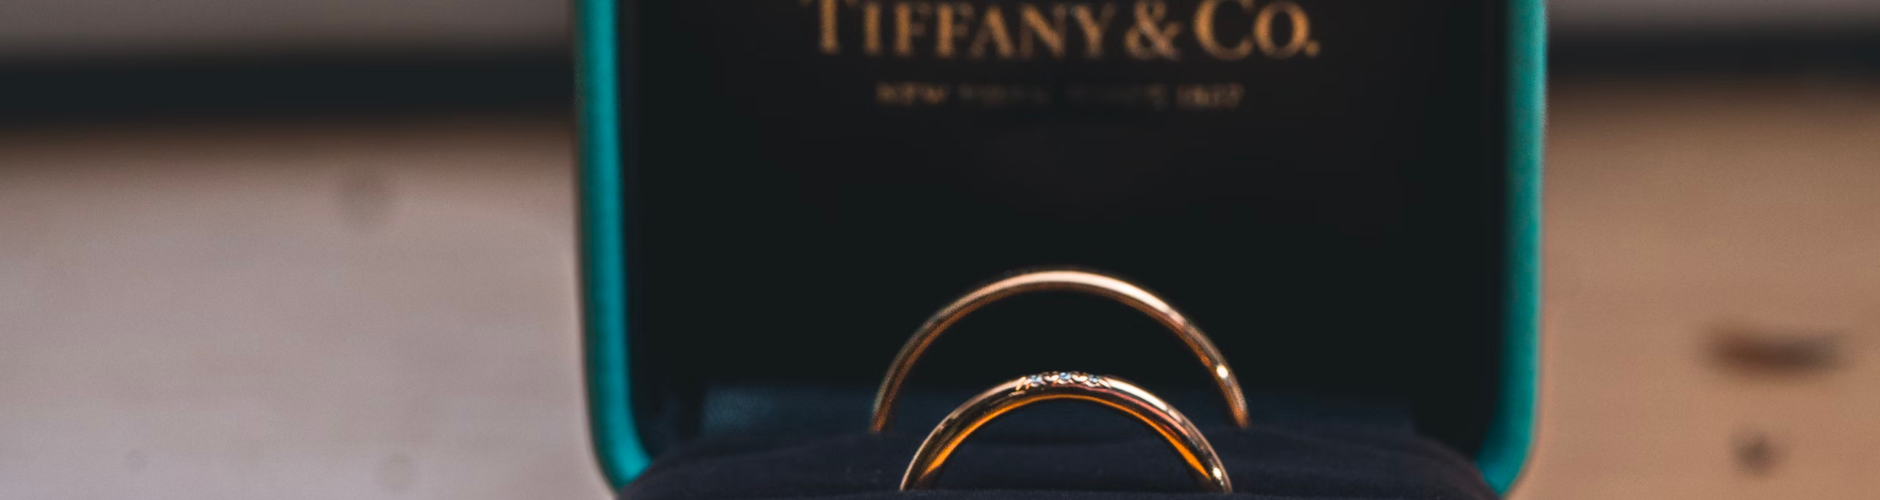 Sale Tiffany & Co. Jewelry